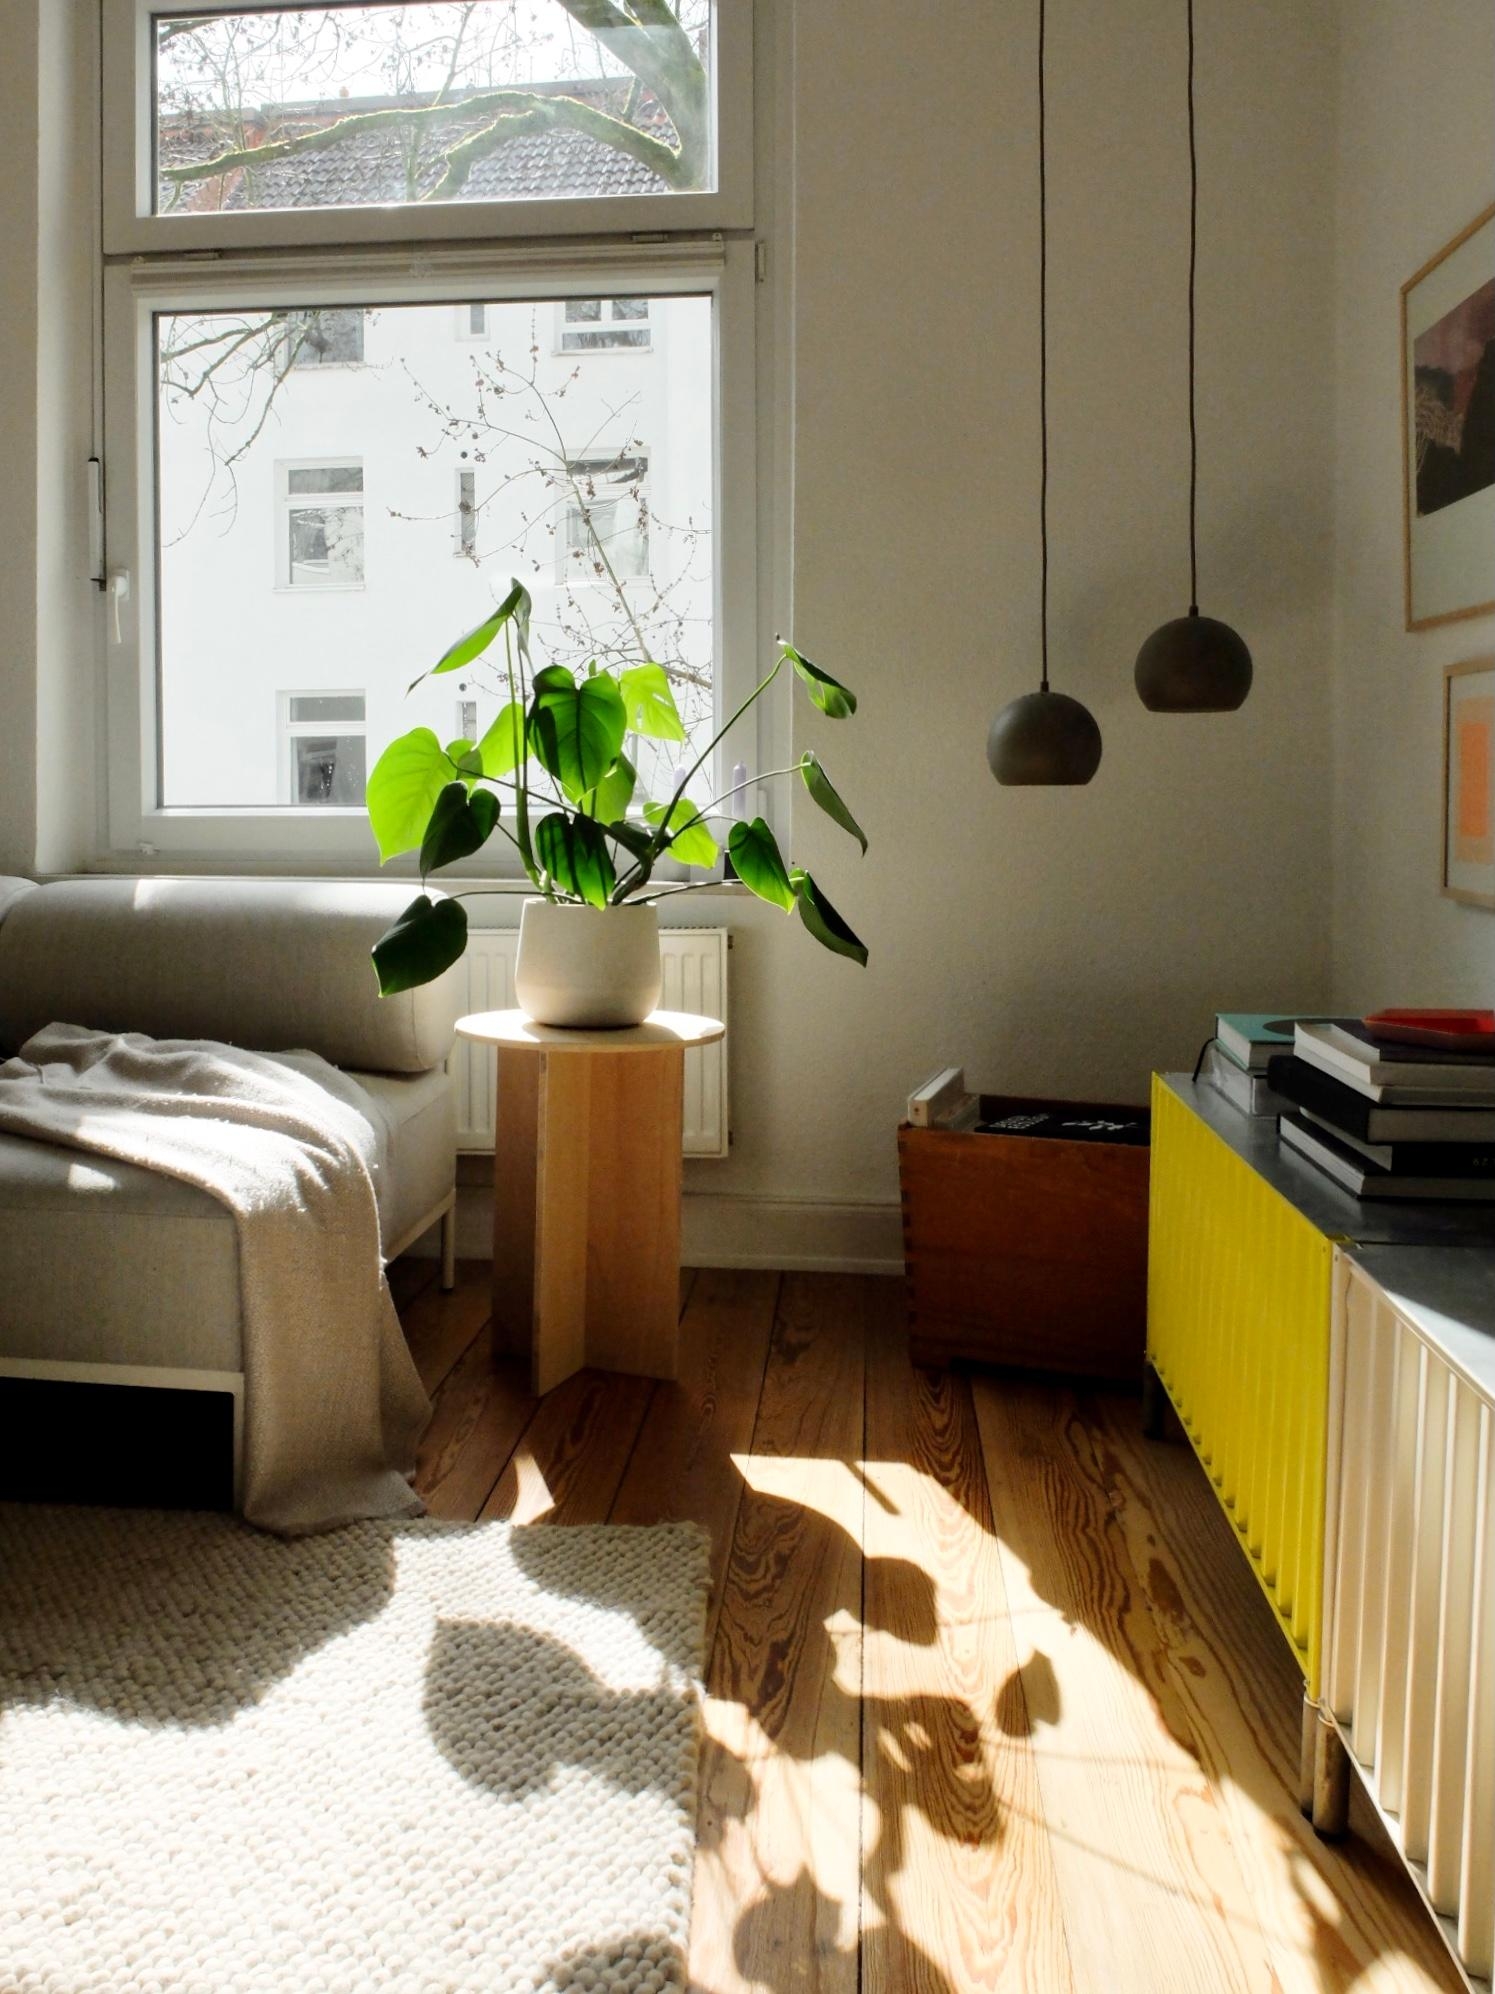 #wohnzimmer #diy #beistelltisch #monstera #pflanzen #sideboard #couch #lights #sonne 